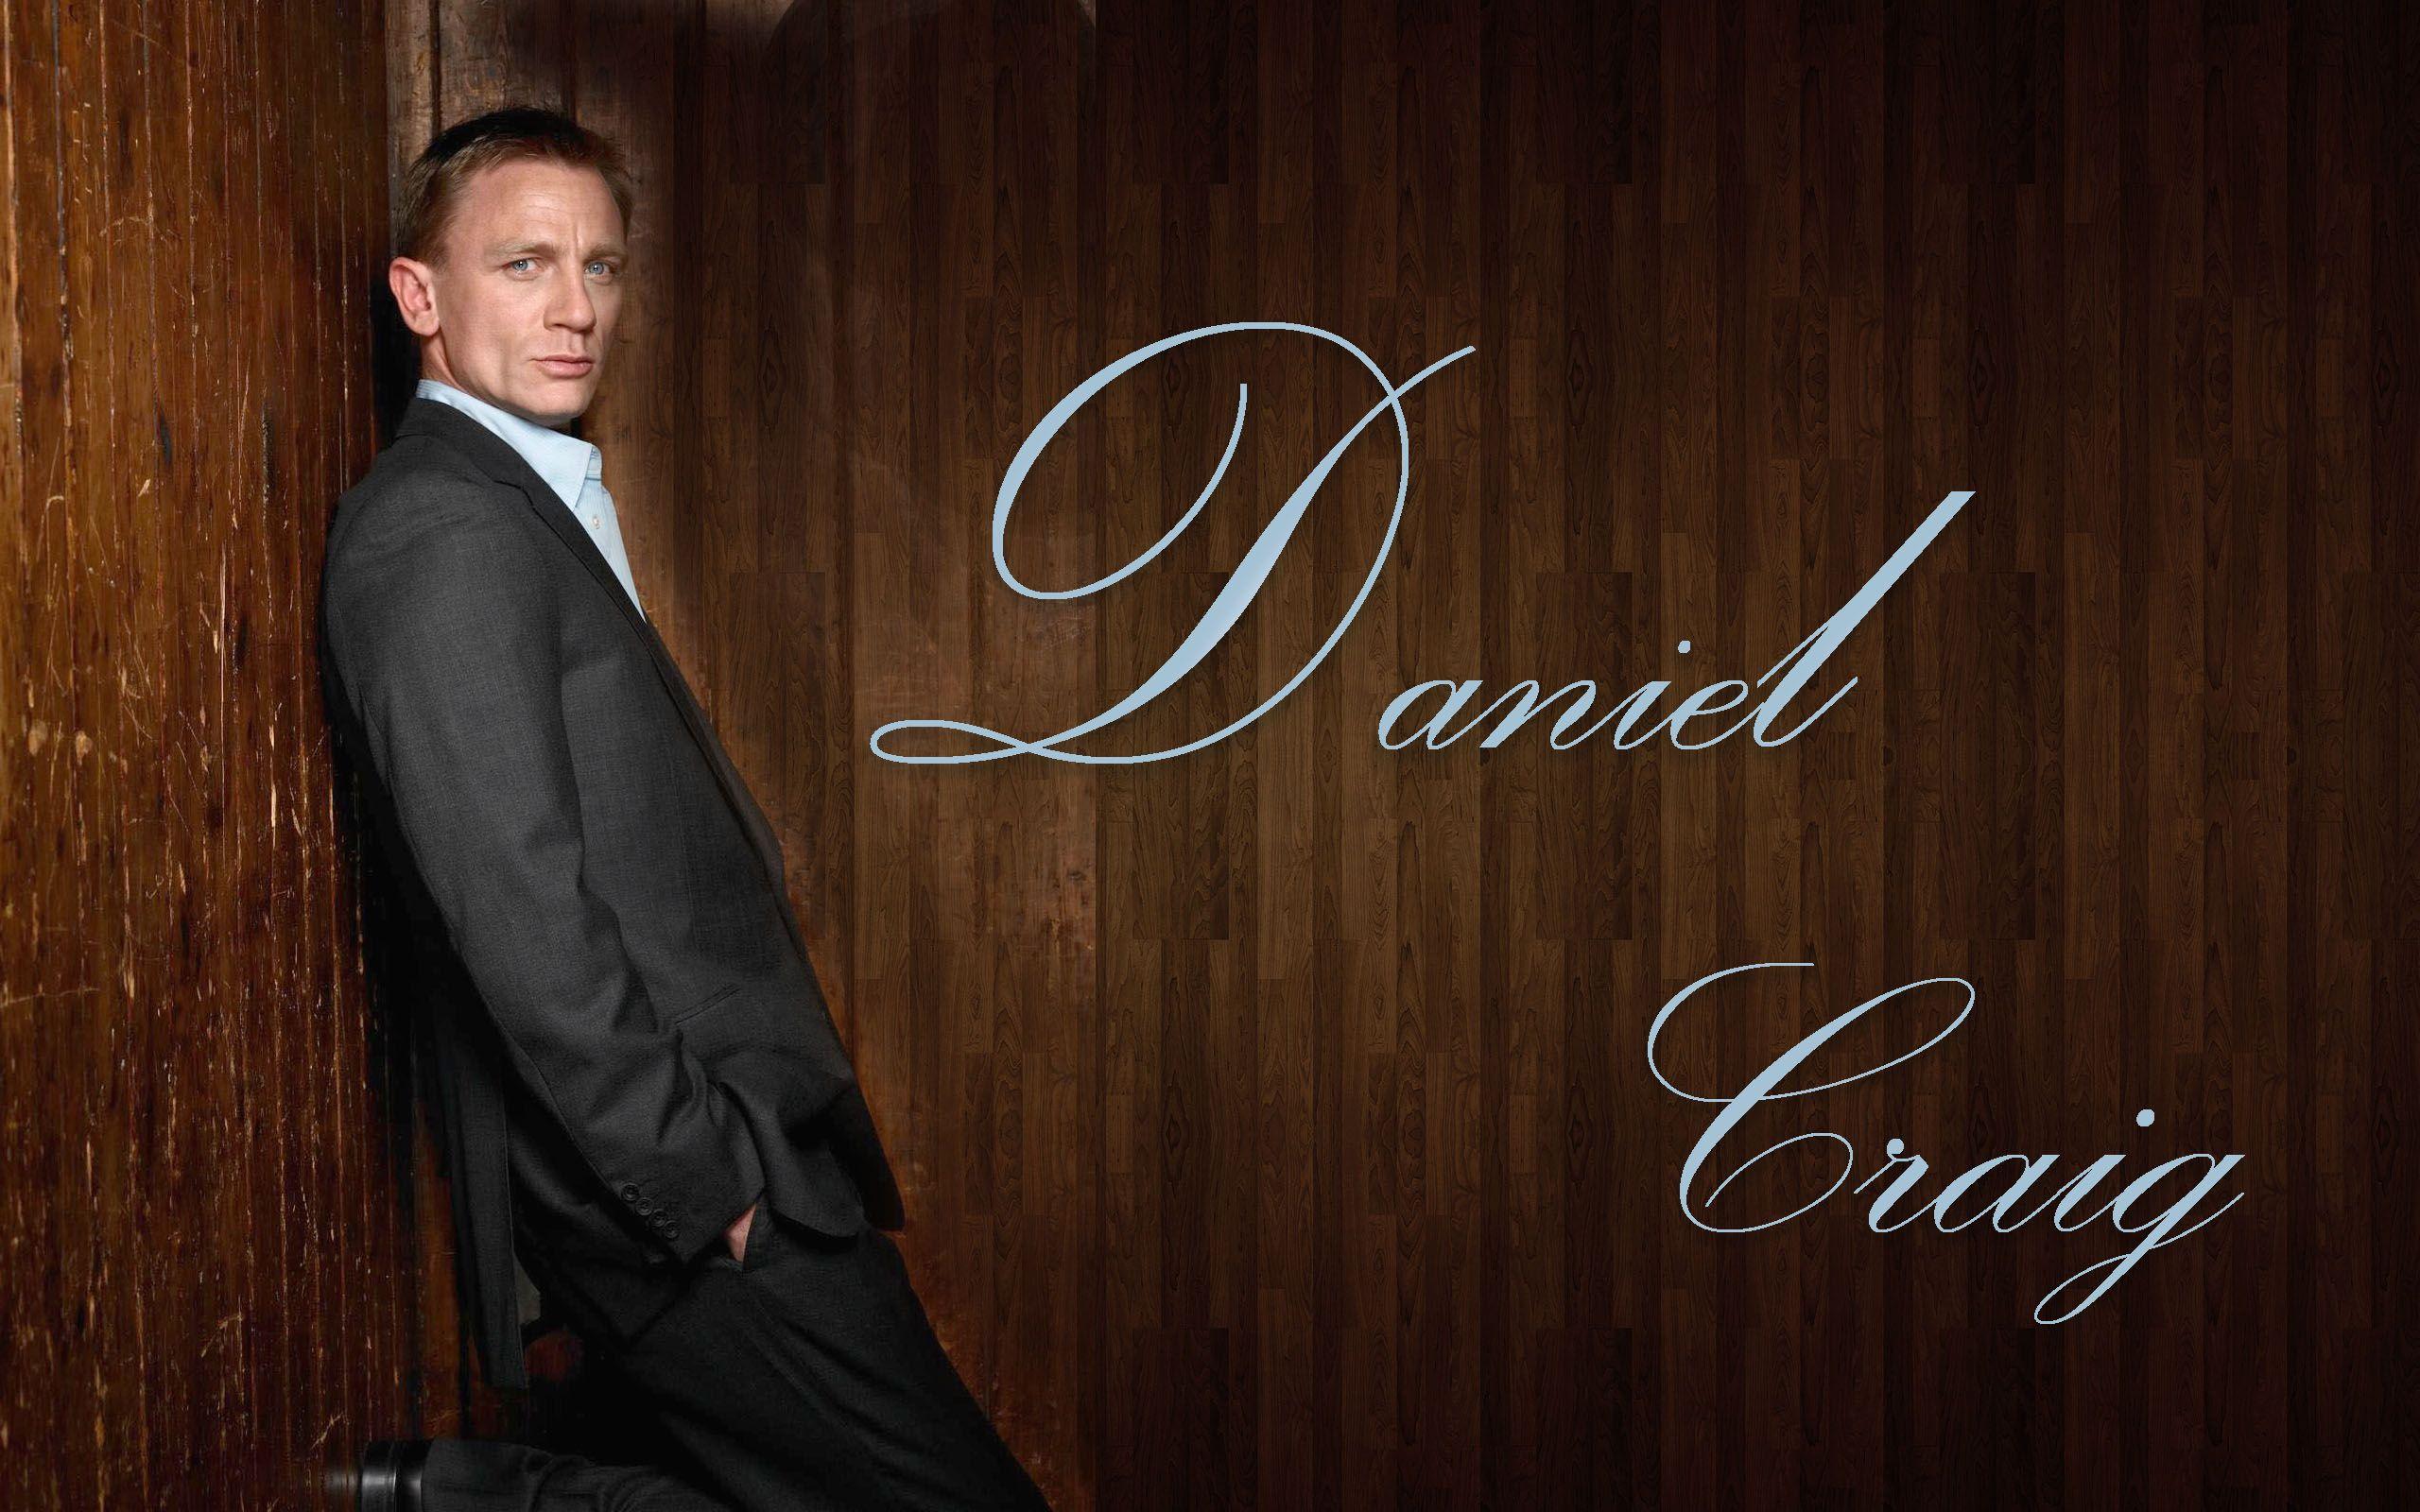 Daniel Craig Wallpaper